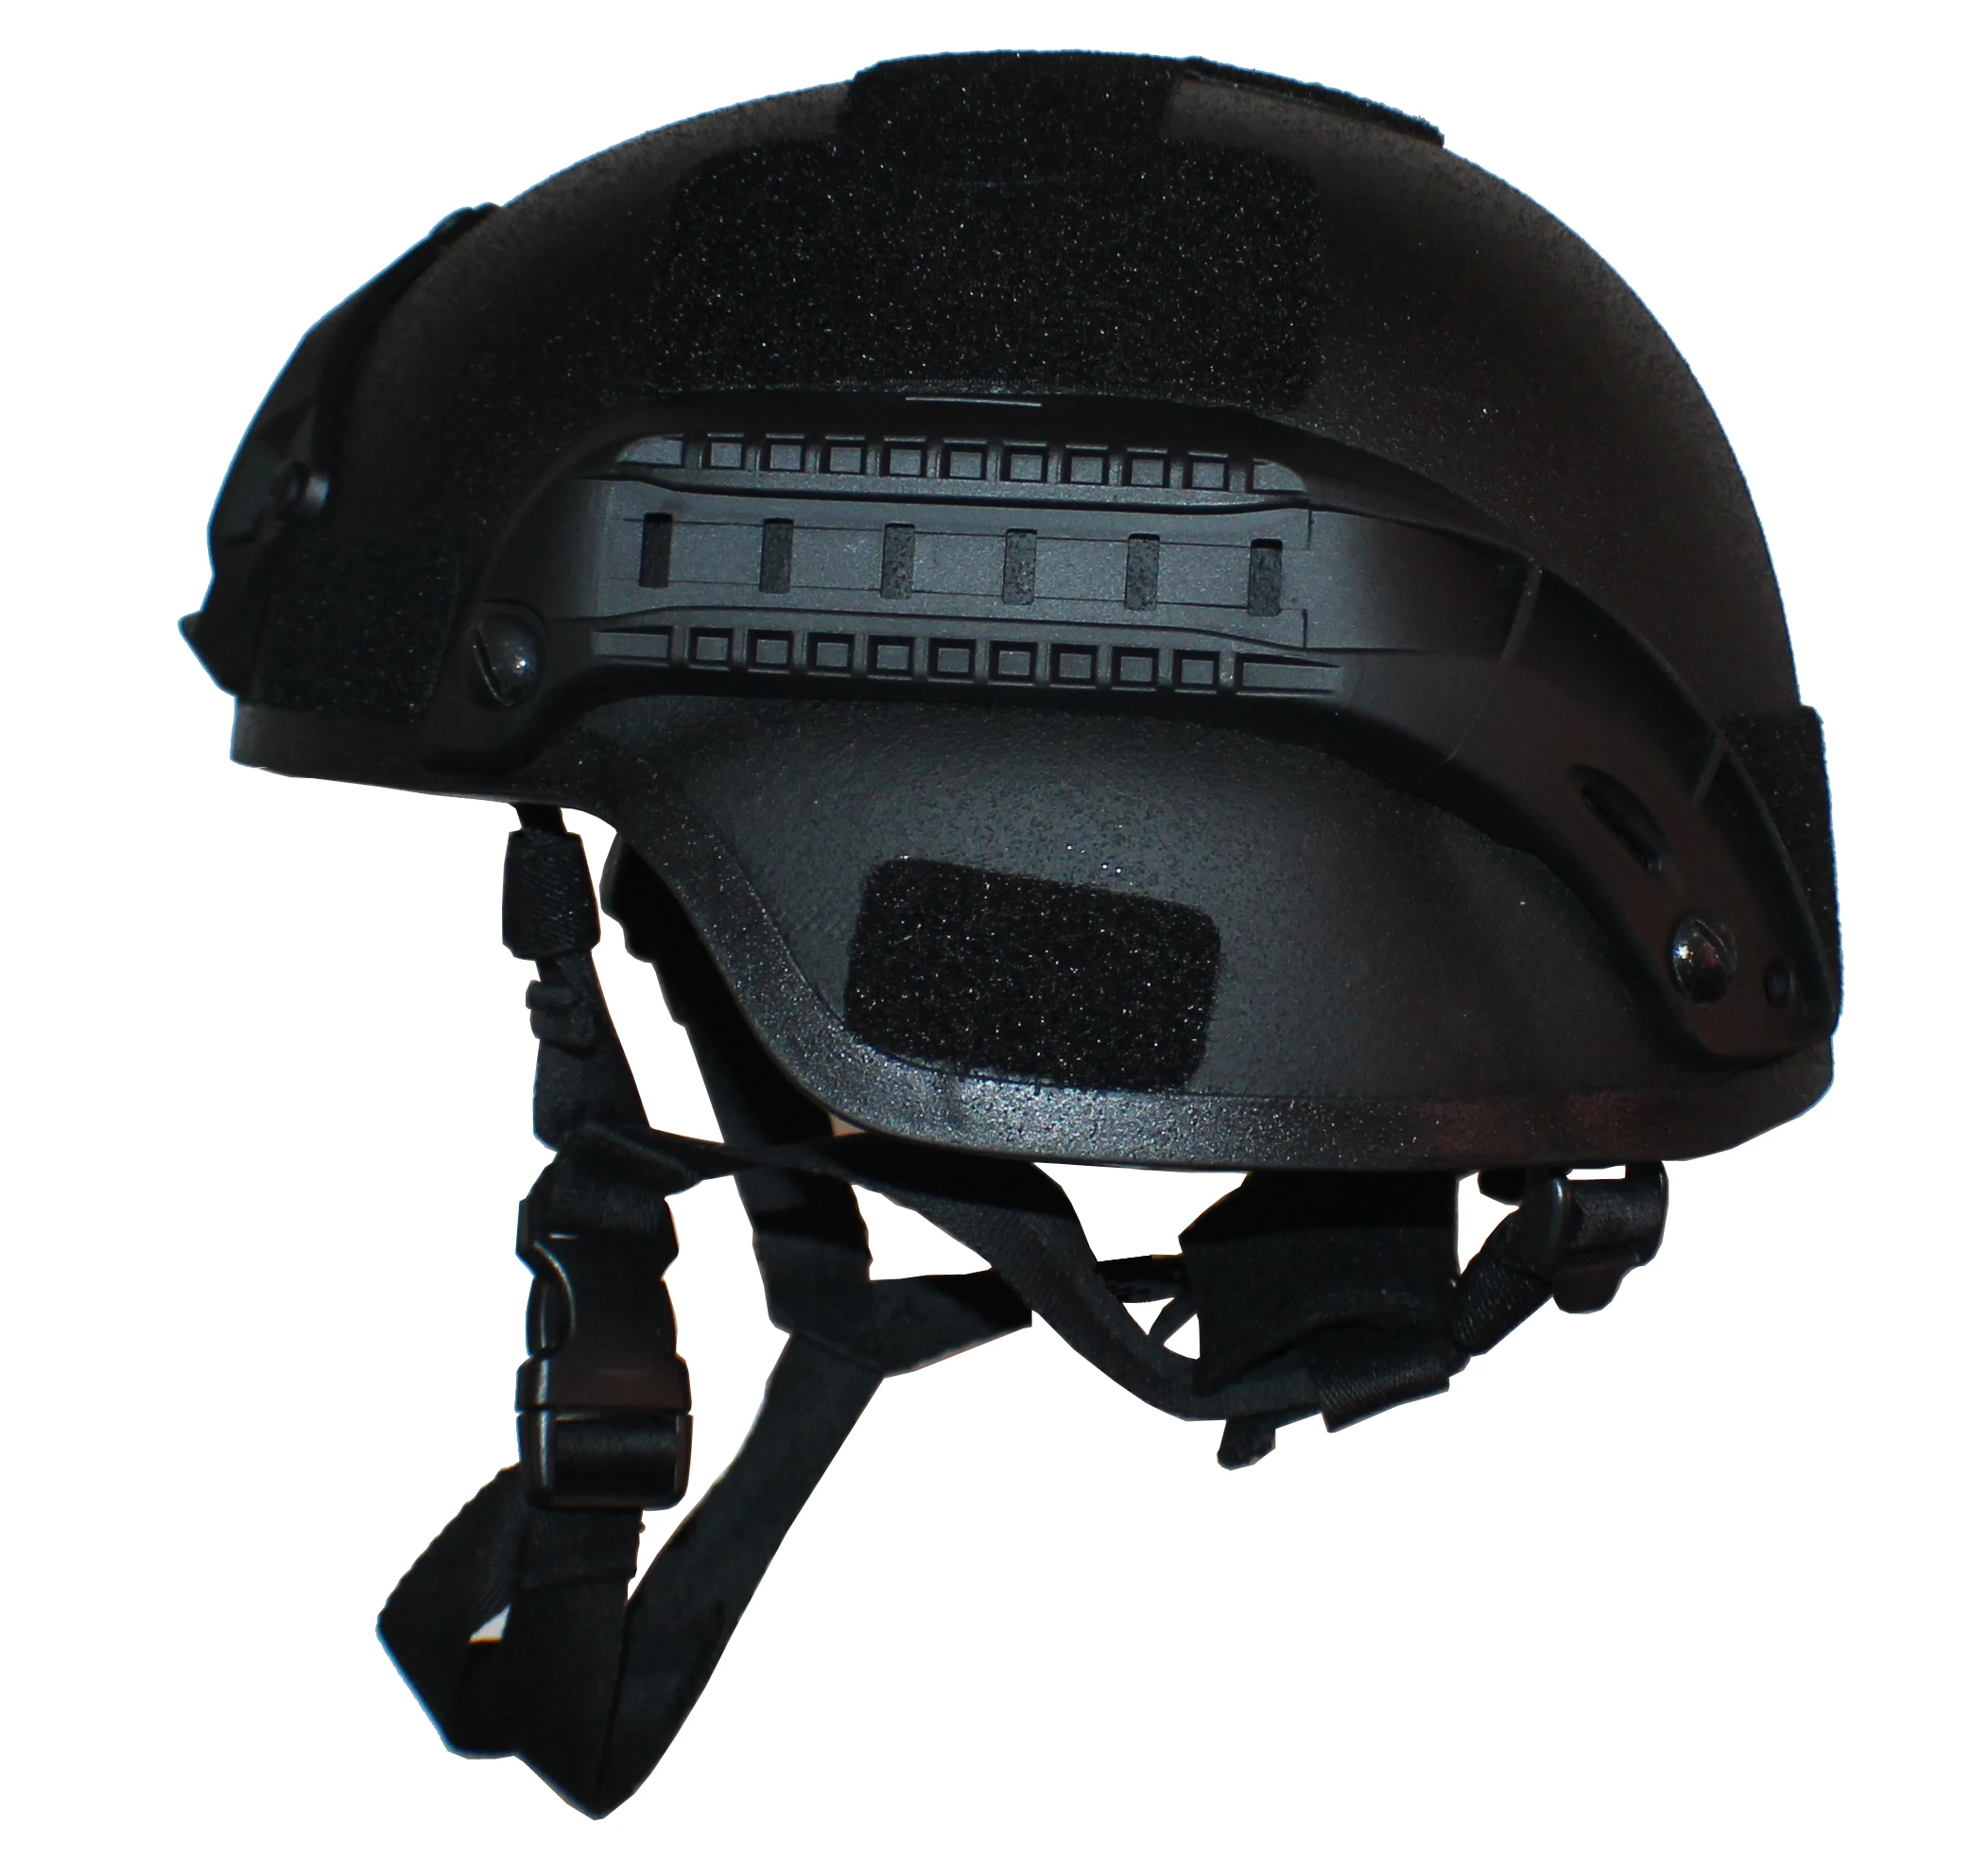 MKST Mich Bulletproof helmet